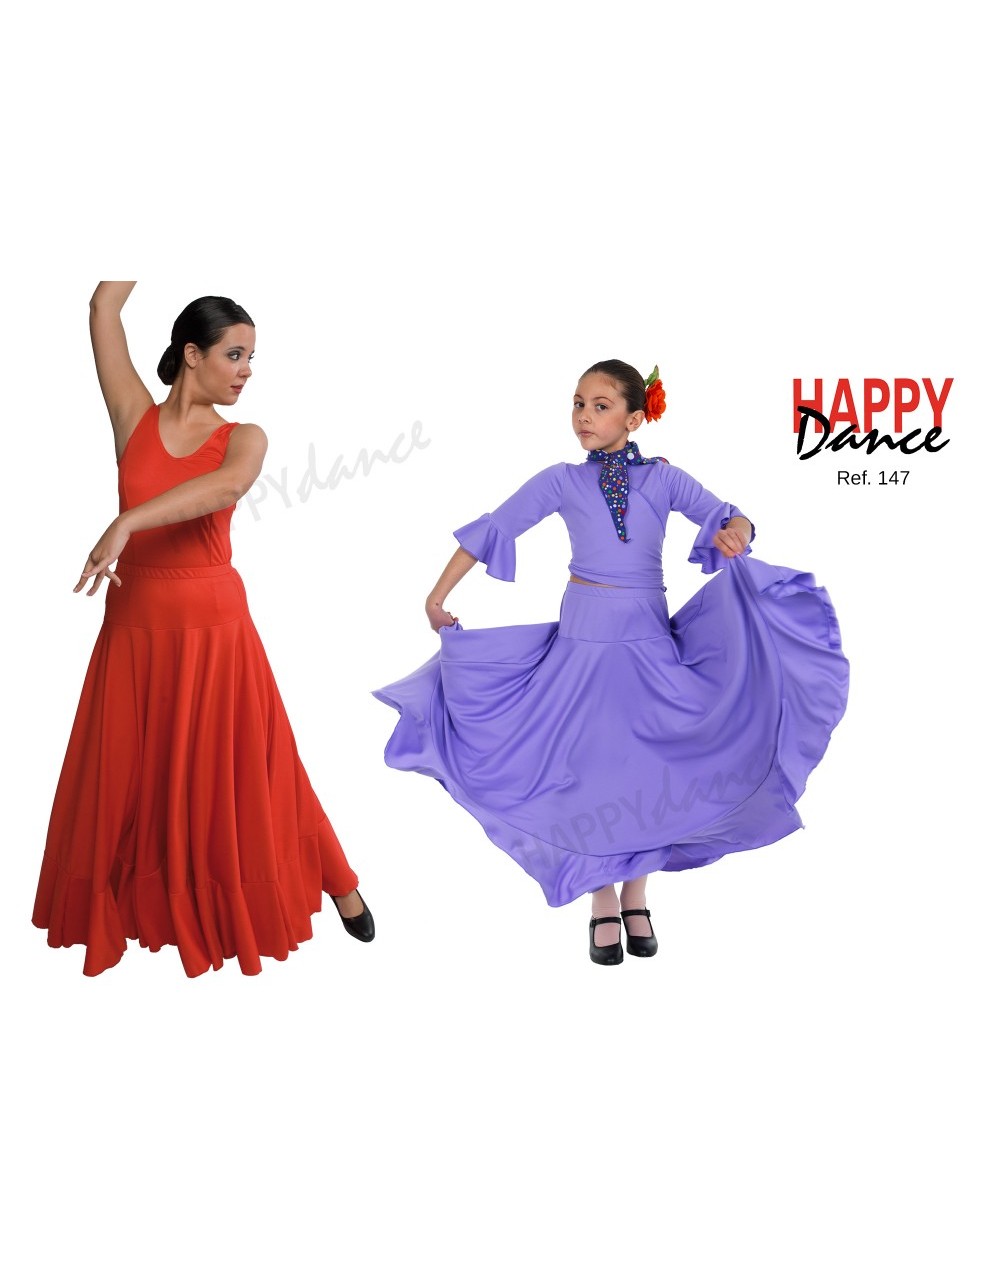 Vestuario flamenco niña - Faldas de Baile flamenco